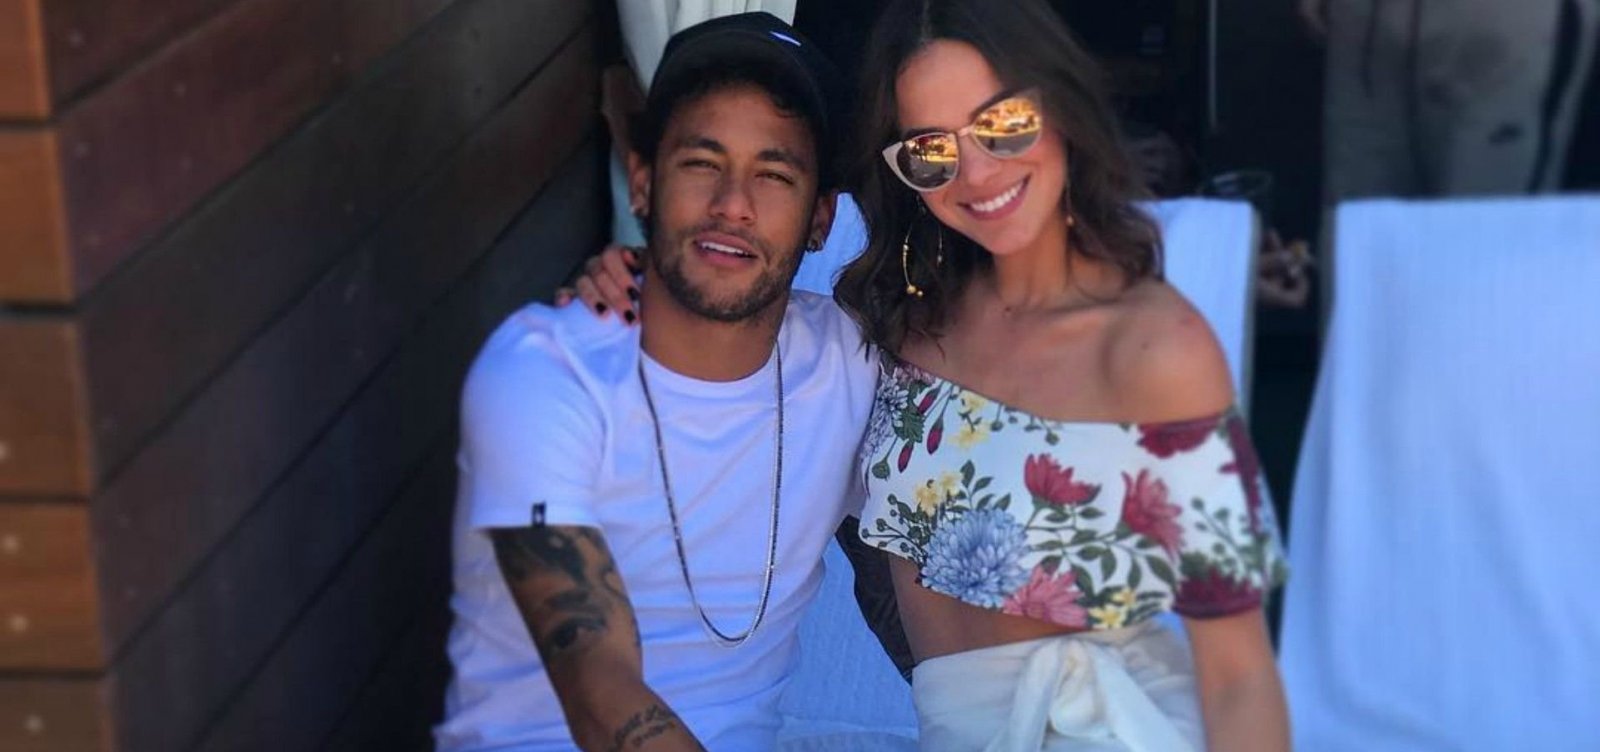 Neymar e Bruna Marquezine podem ter terminado por razões políticas, especulam fãs